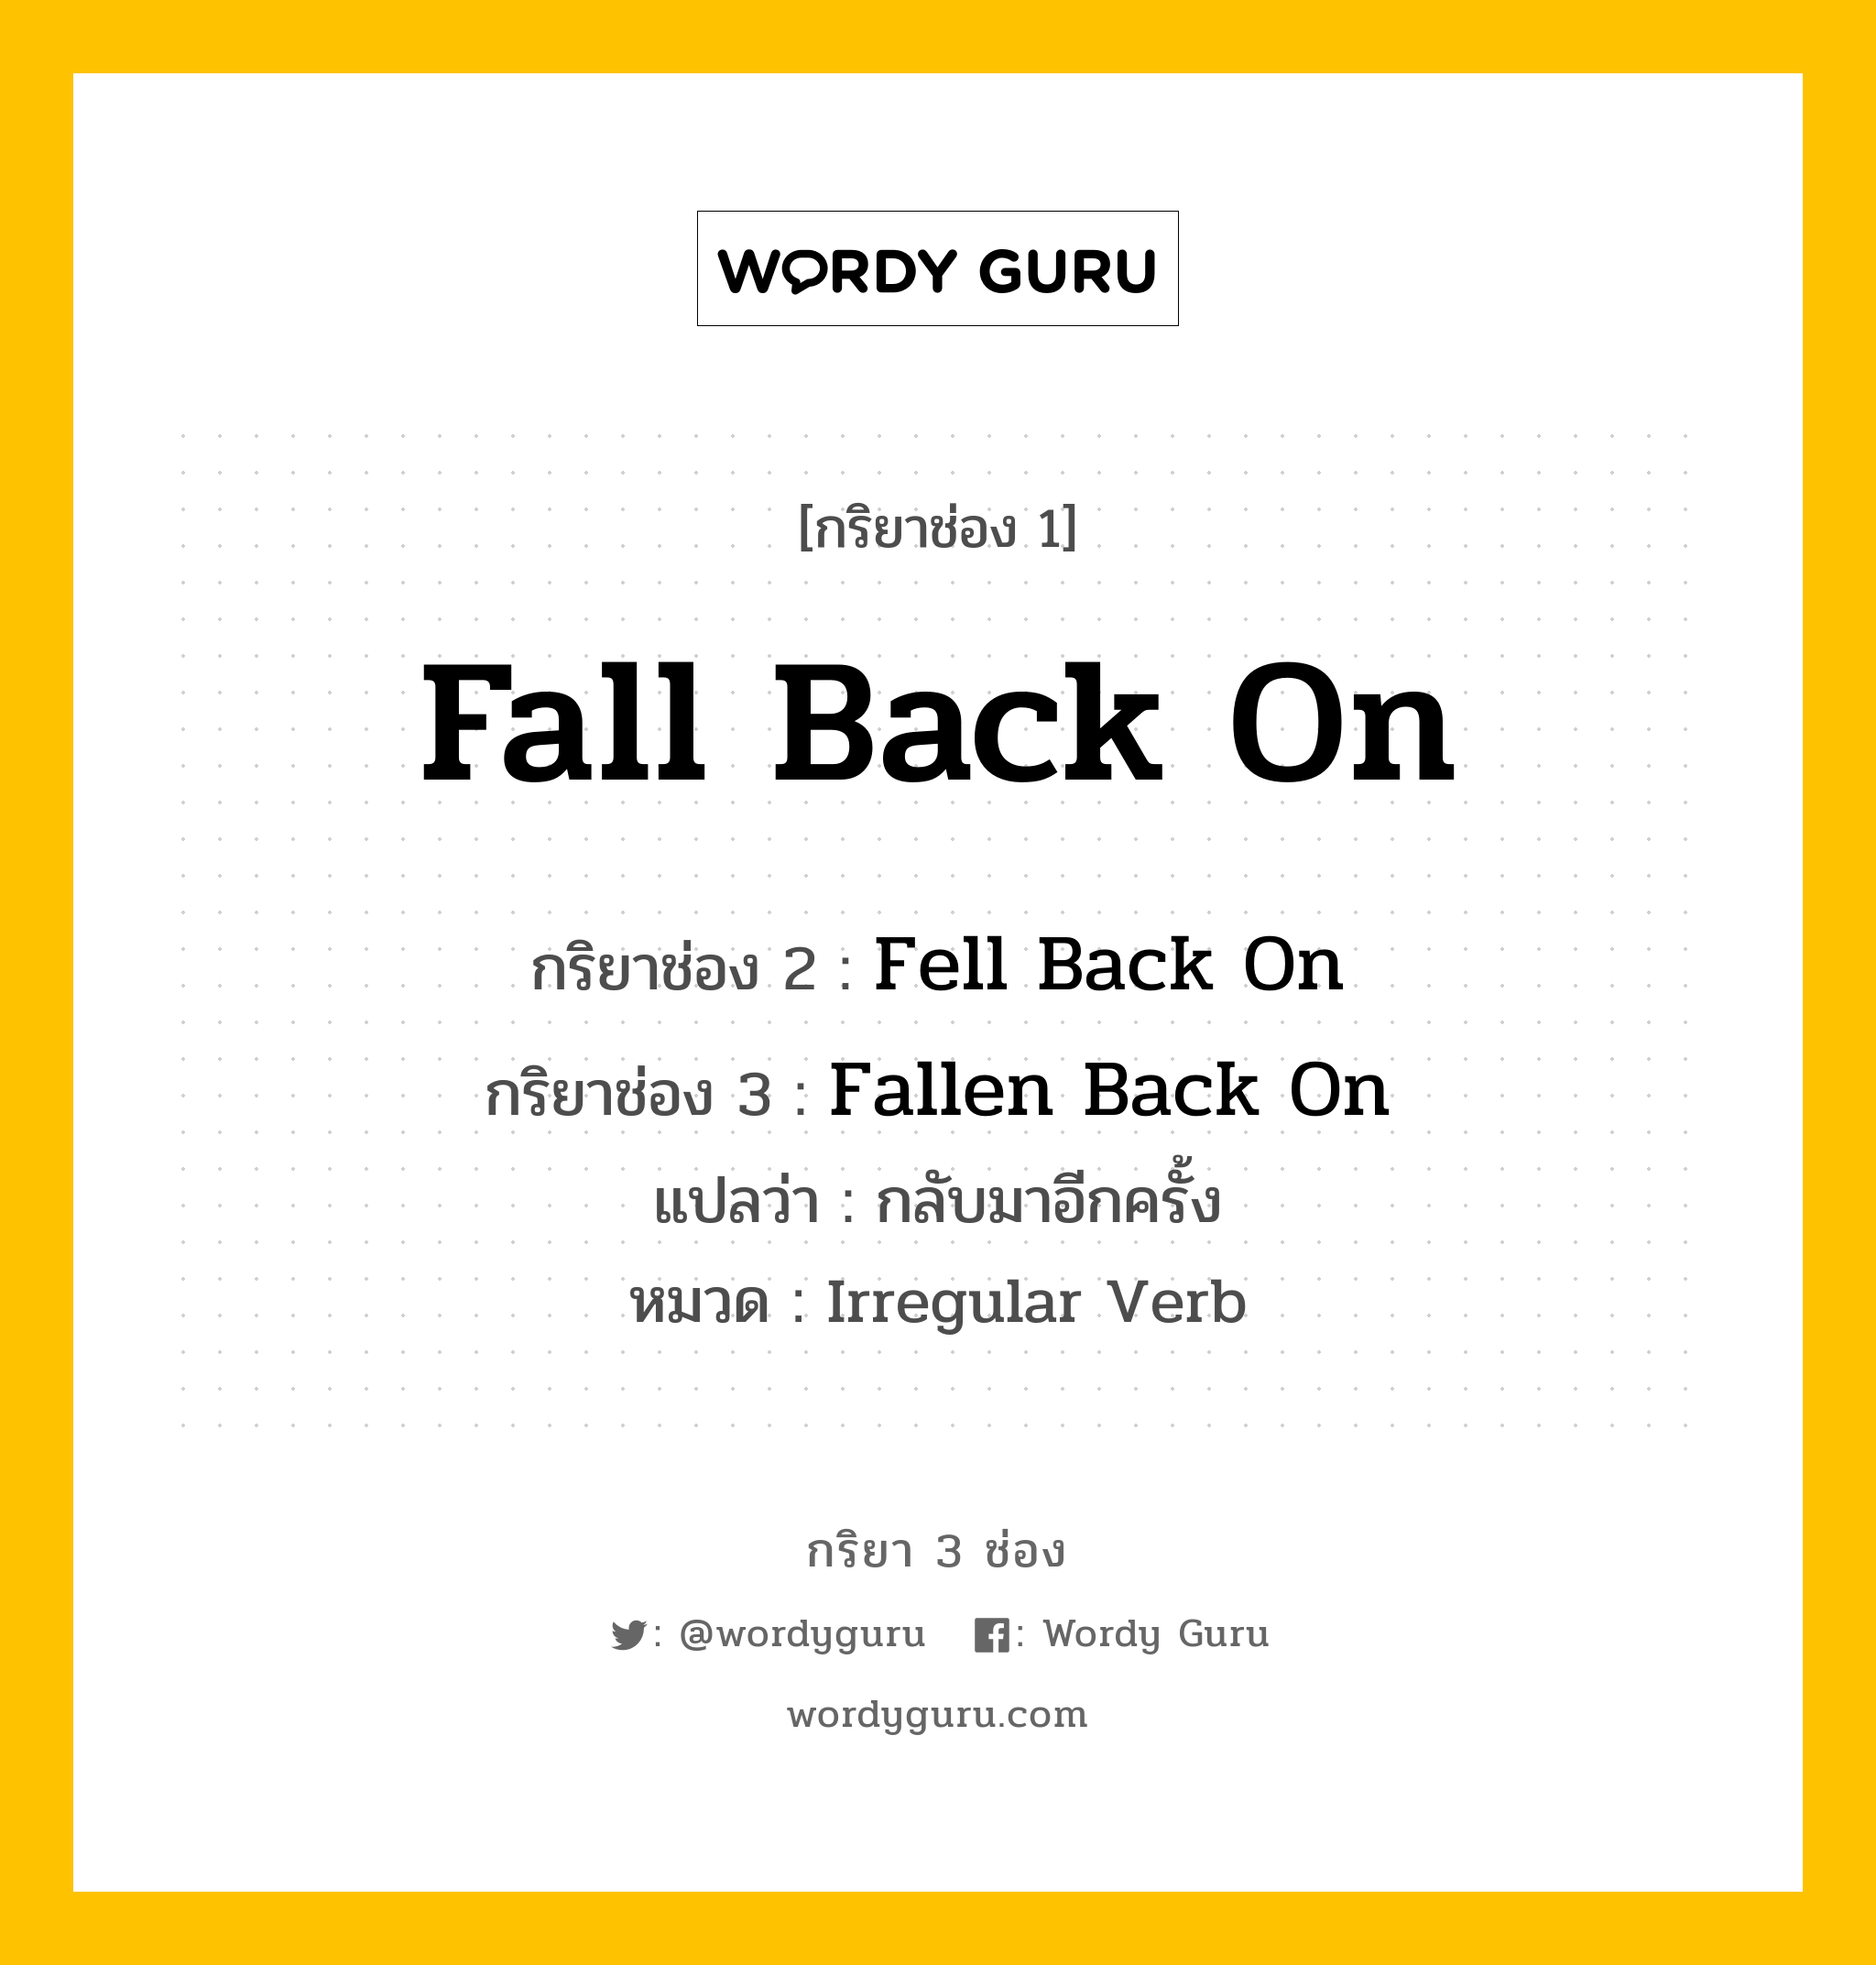 กริยา 3 ช่อง ของ Fall Back On คืออะไร?, กริยาช่อง 1 Fall Back On กริยาช่อง 2 Fell Back On กริยาช่อง 3 Fallen Back On แปลว่า กลับมาอีกครั้ง หมวด Irregular Verb หมวด Irregular Verb